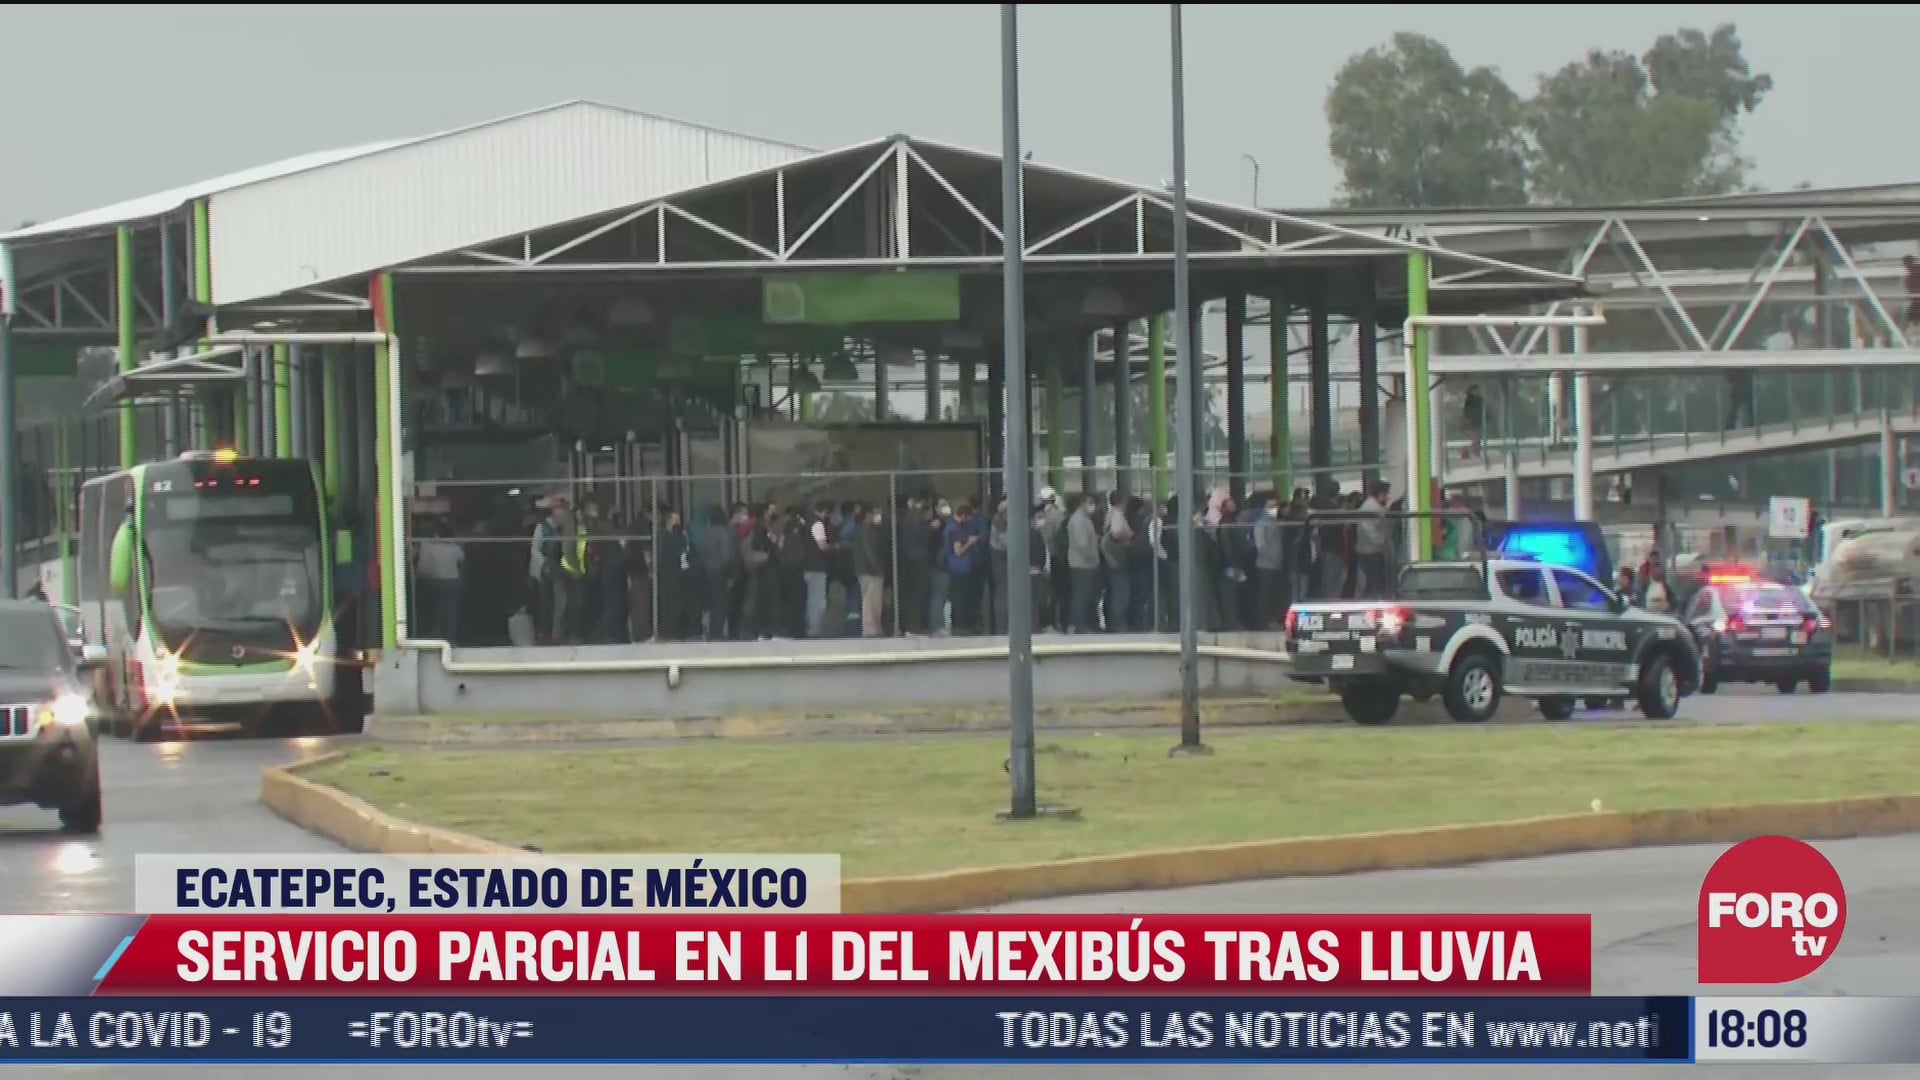 servicio parcial de l1 del mexibus tras lluvias en ecatepec